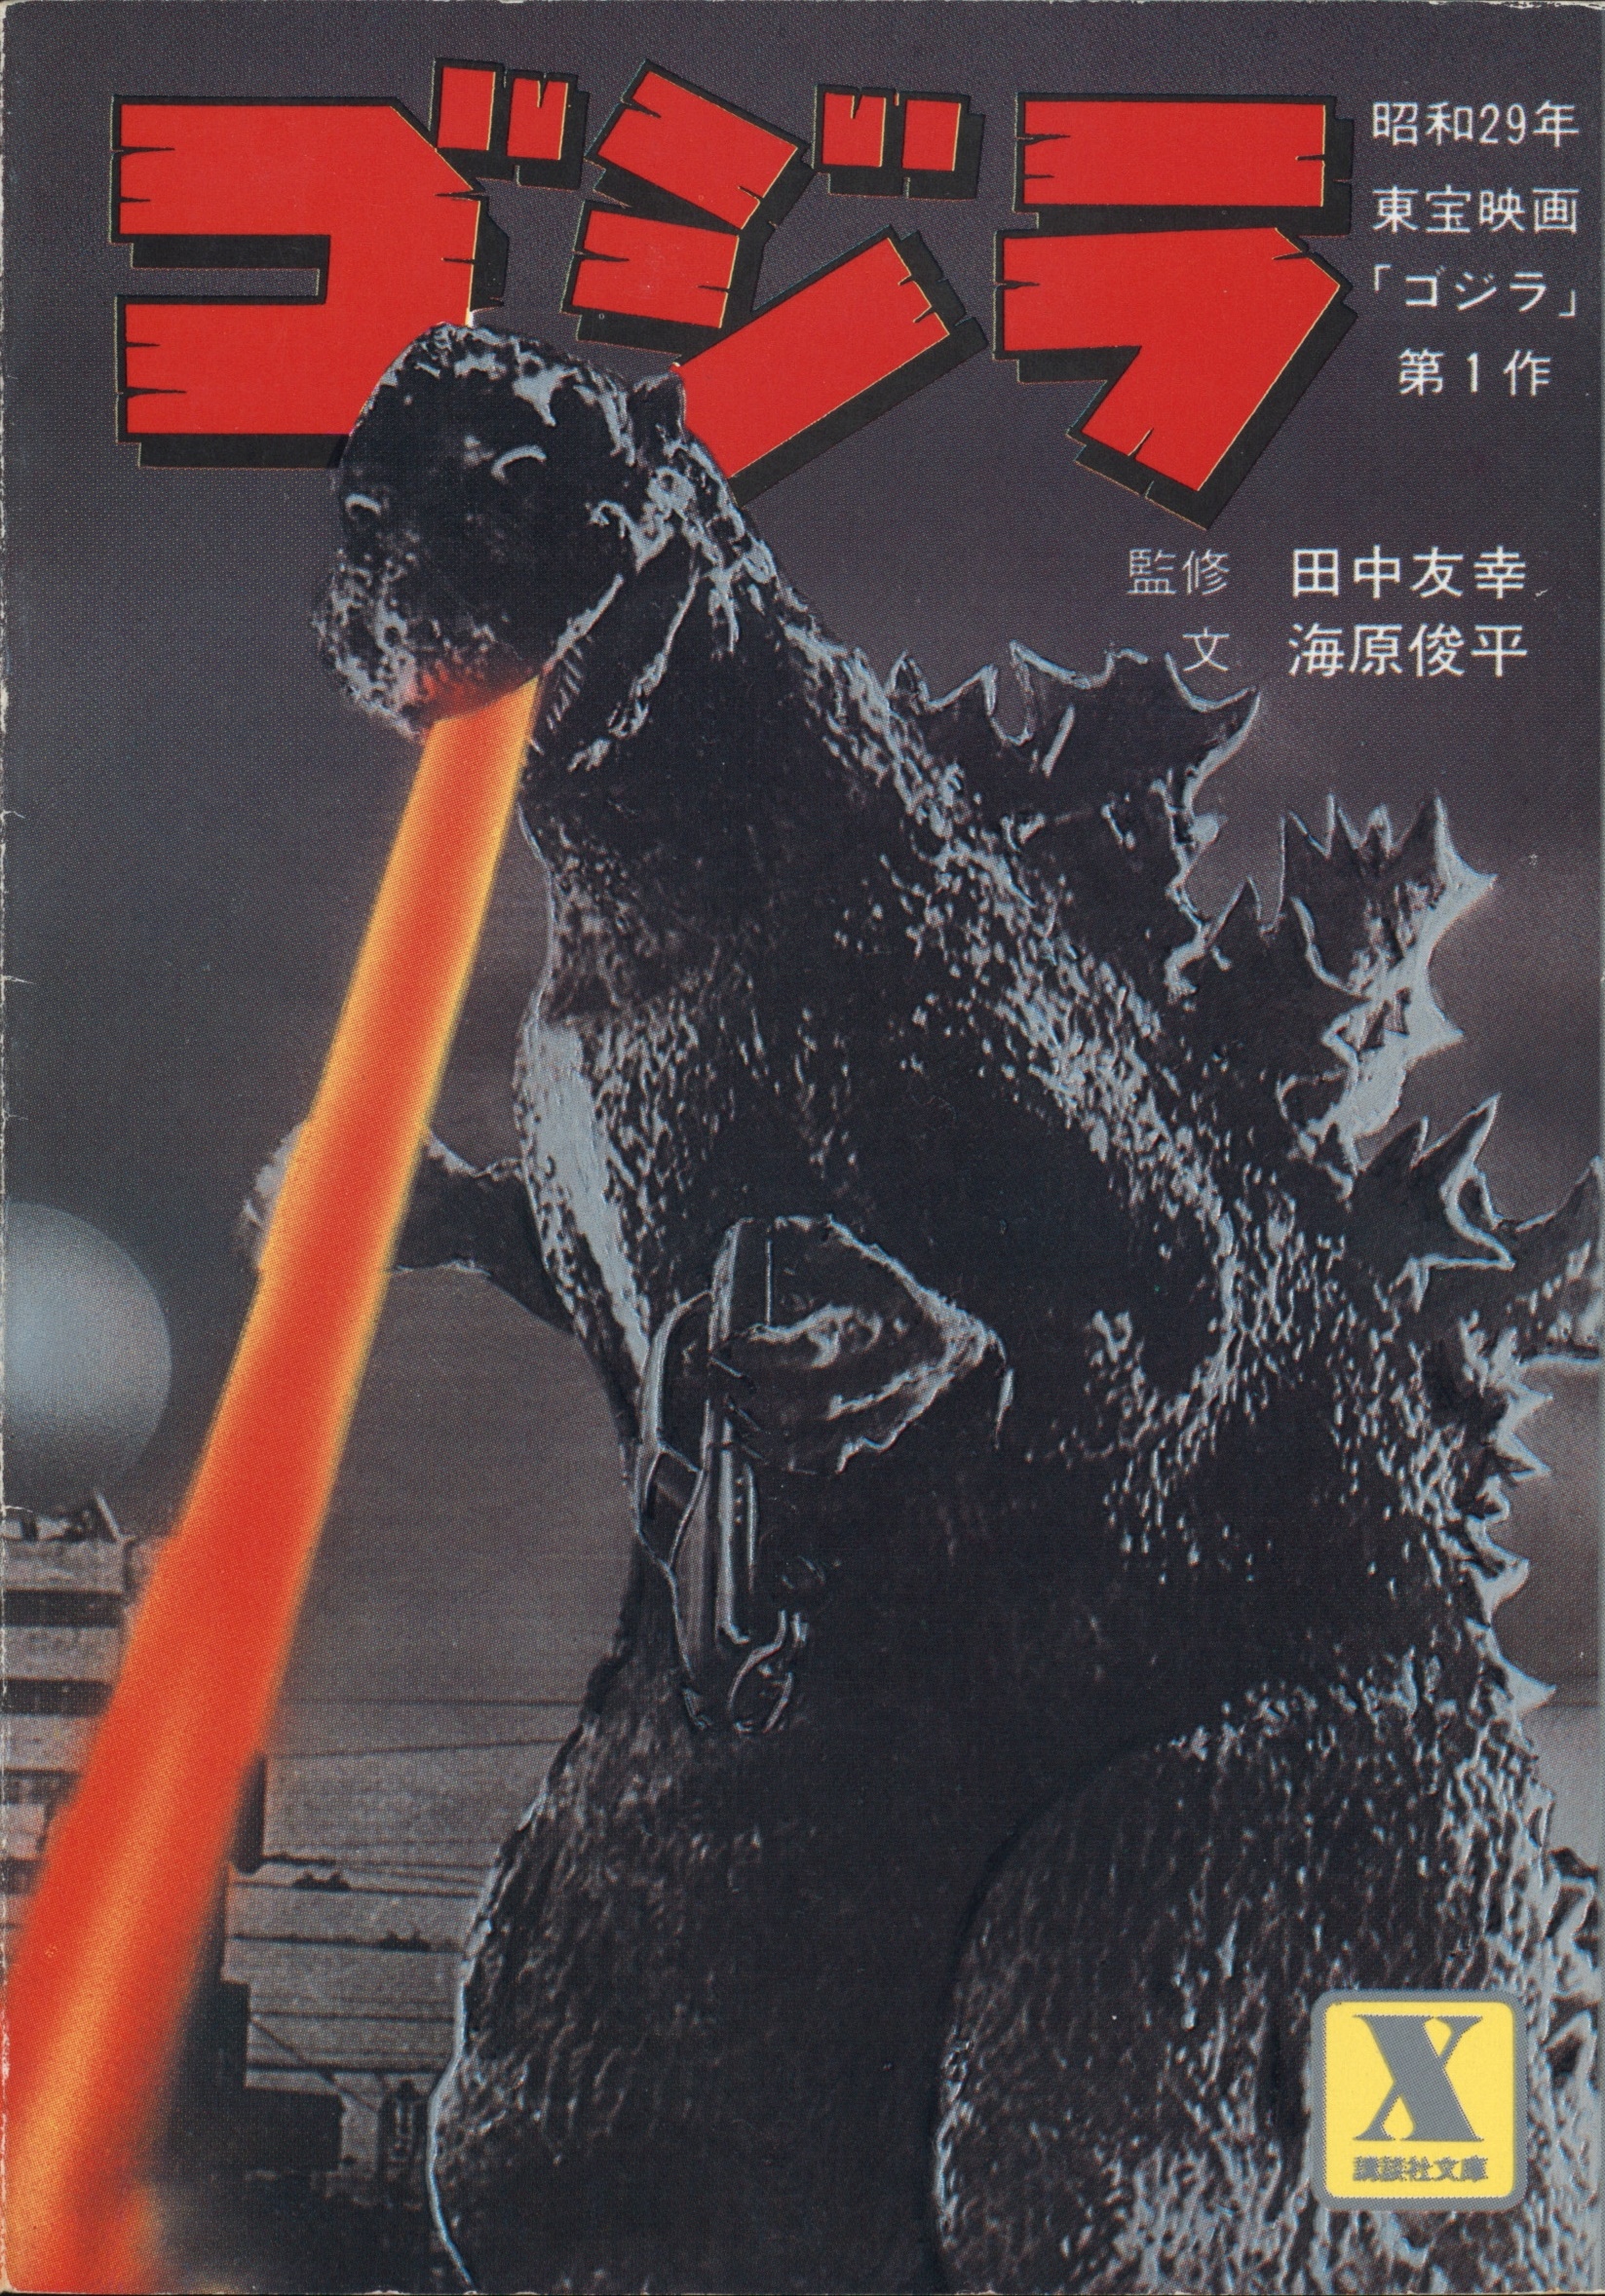 Godzilla (Shin Godzilla)  Wikizilla, the kaiju encyclopedia